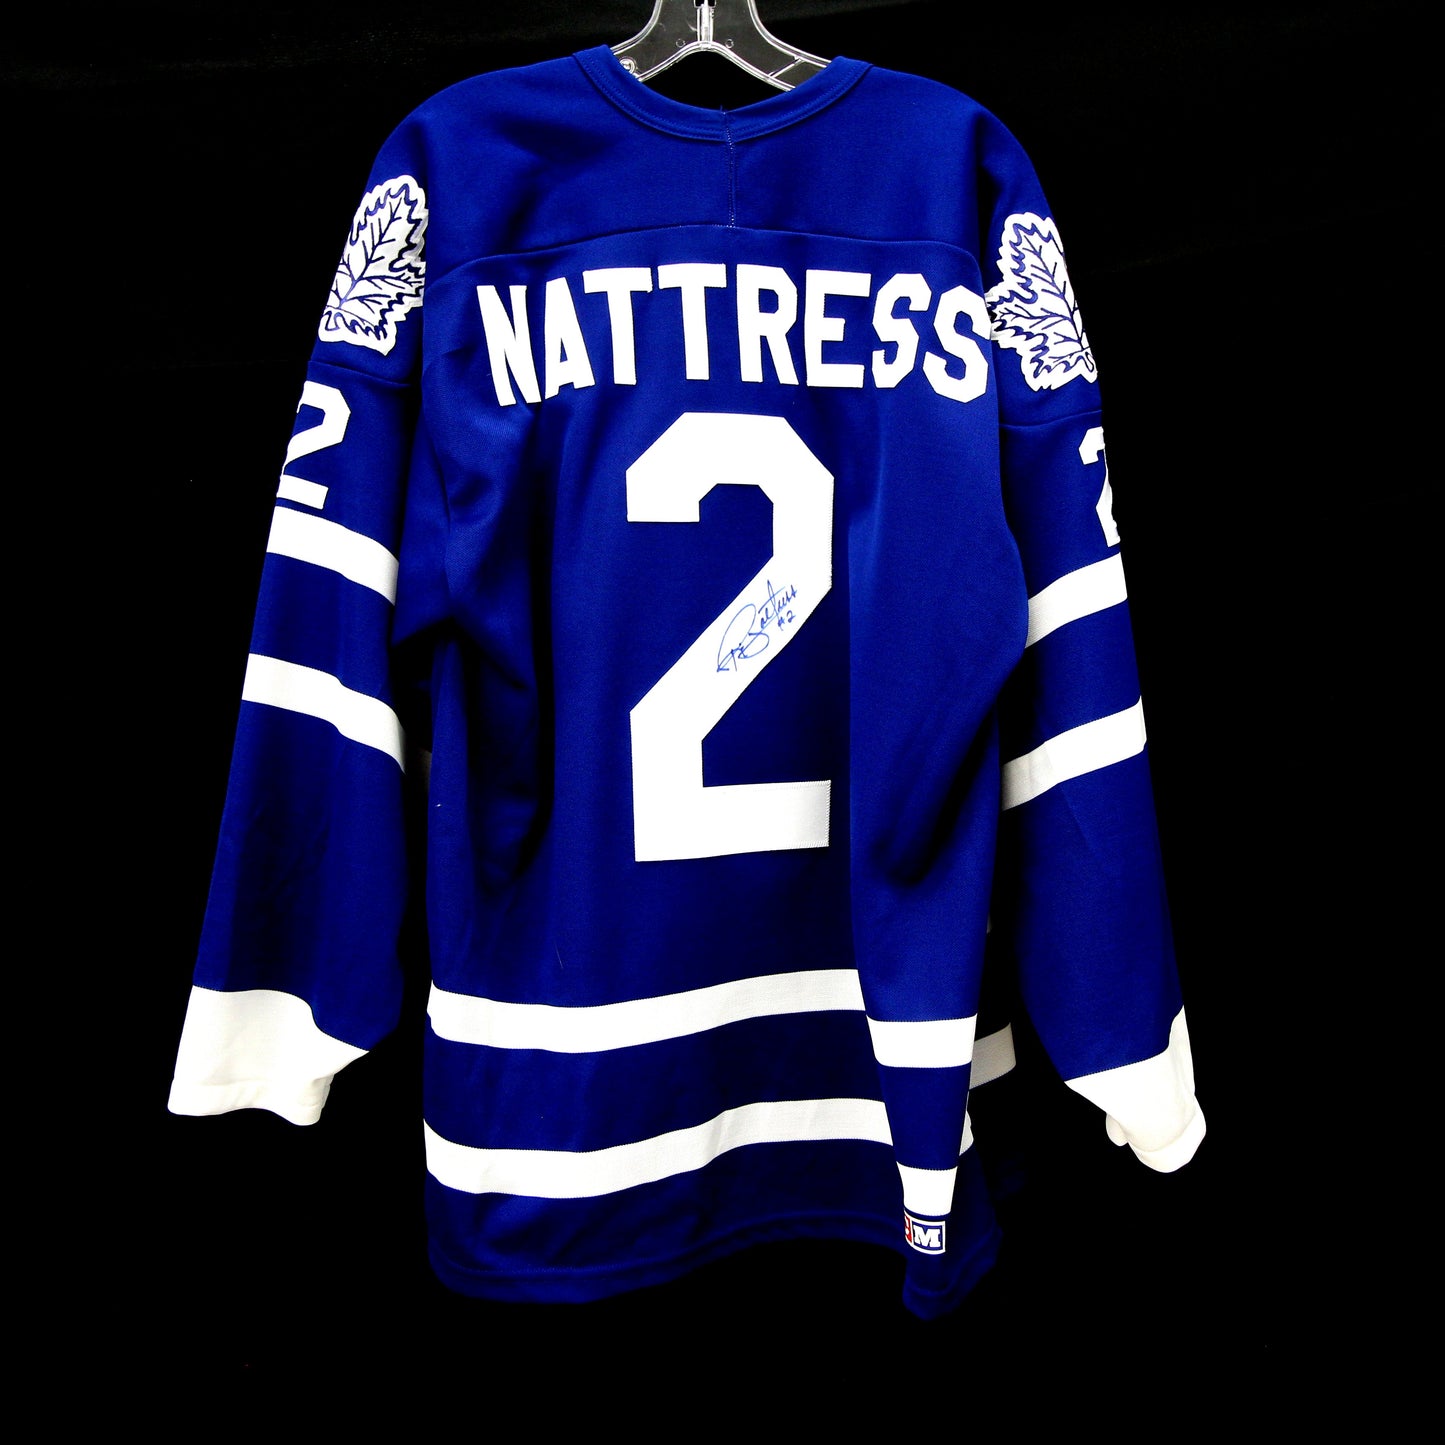 Ric Nattress - Maple Leafs - Autographed Jersey / Chandail autographié